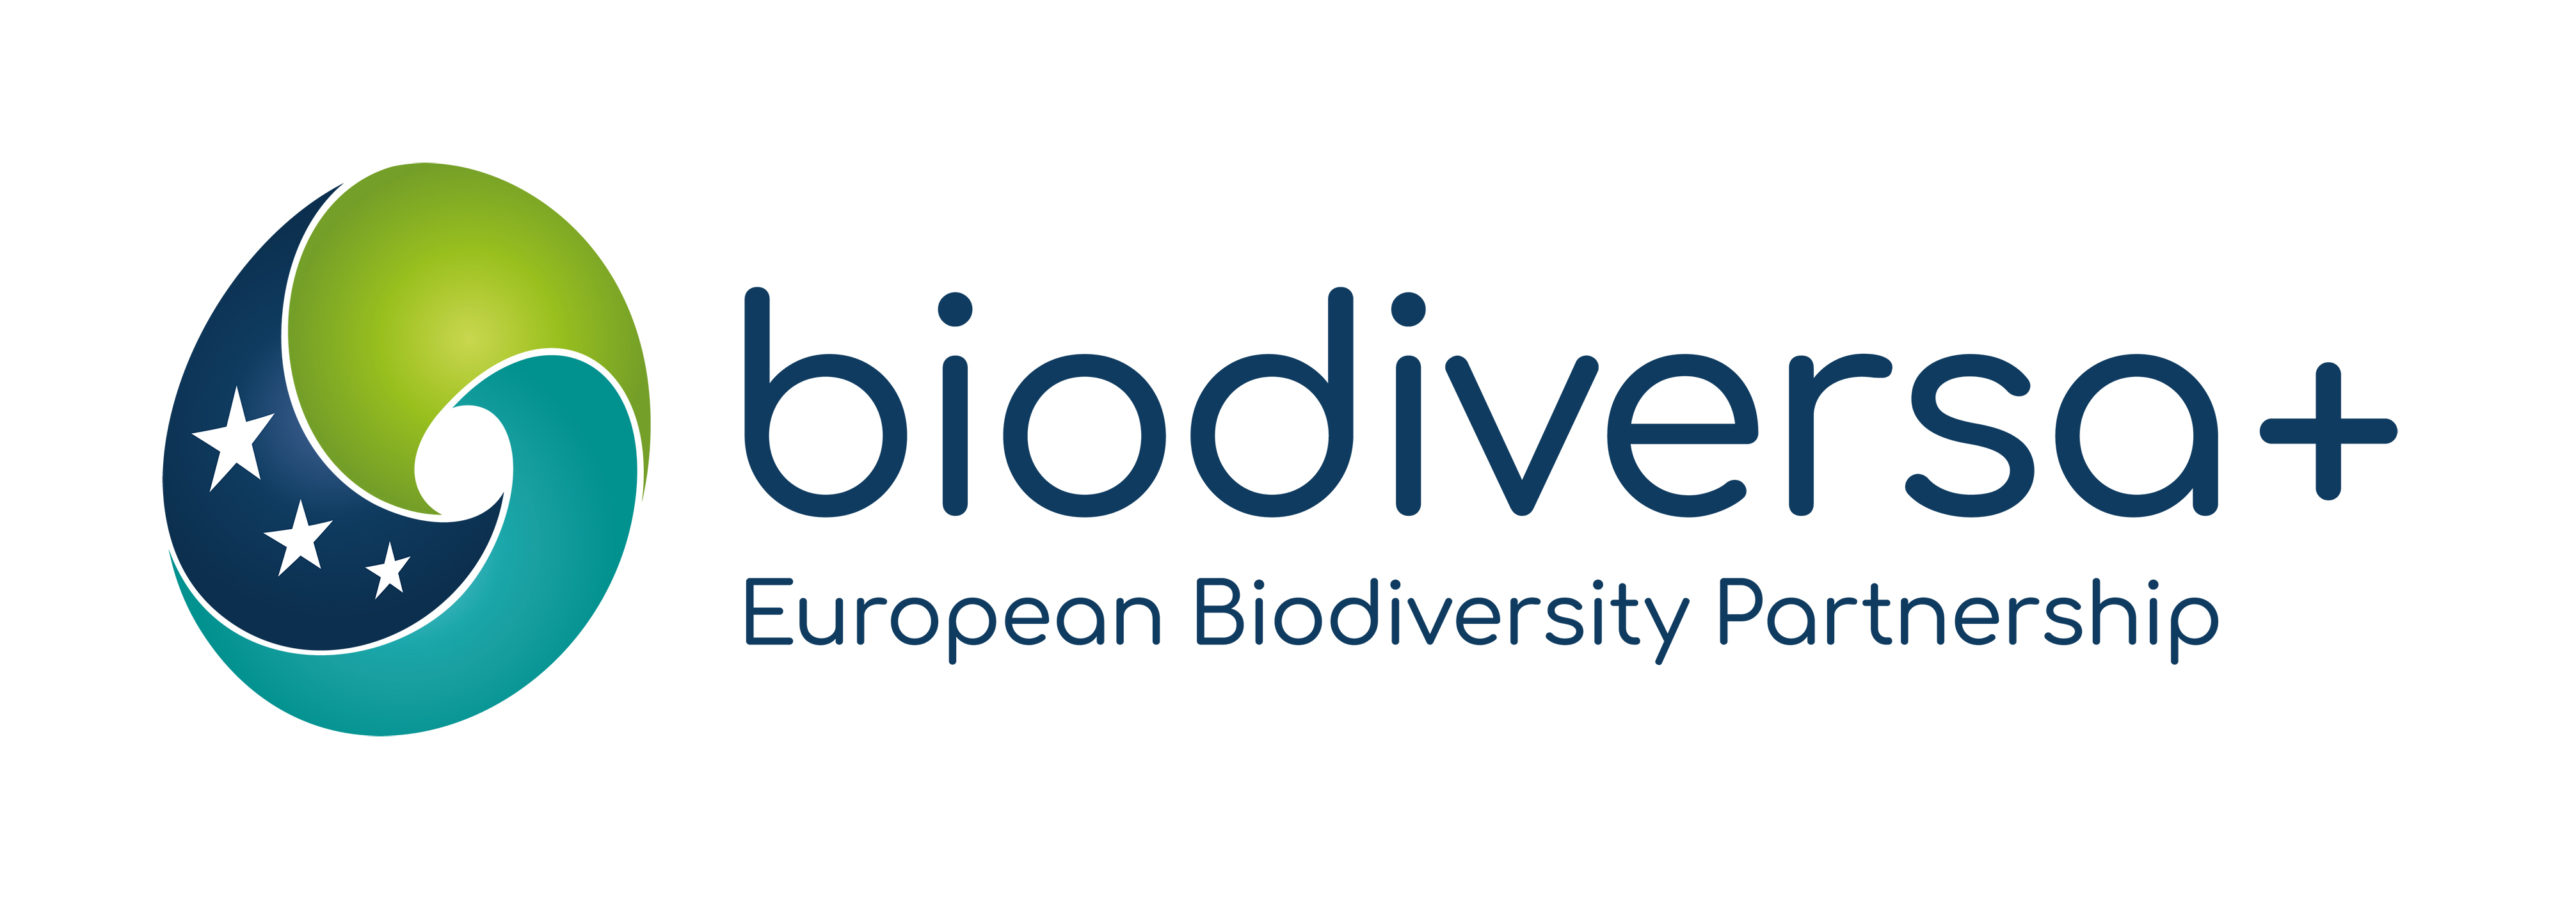 Logo partenariat Biodiversa+